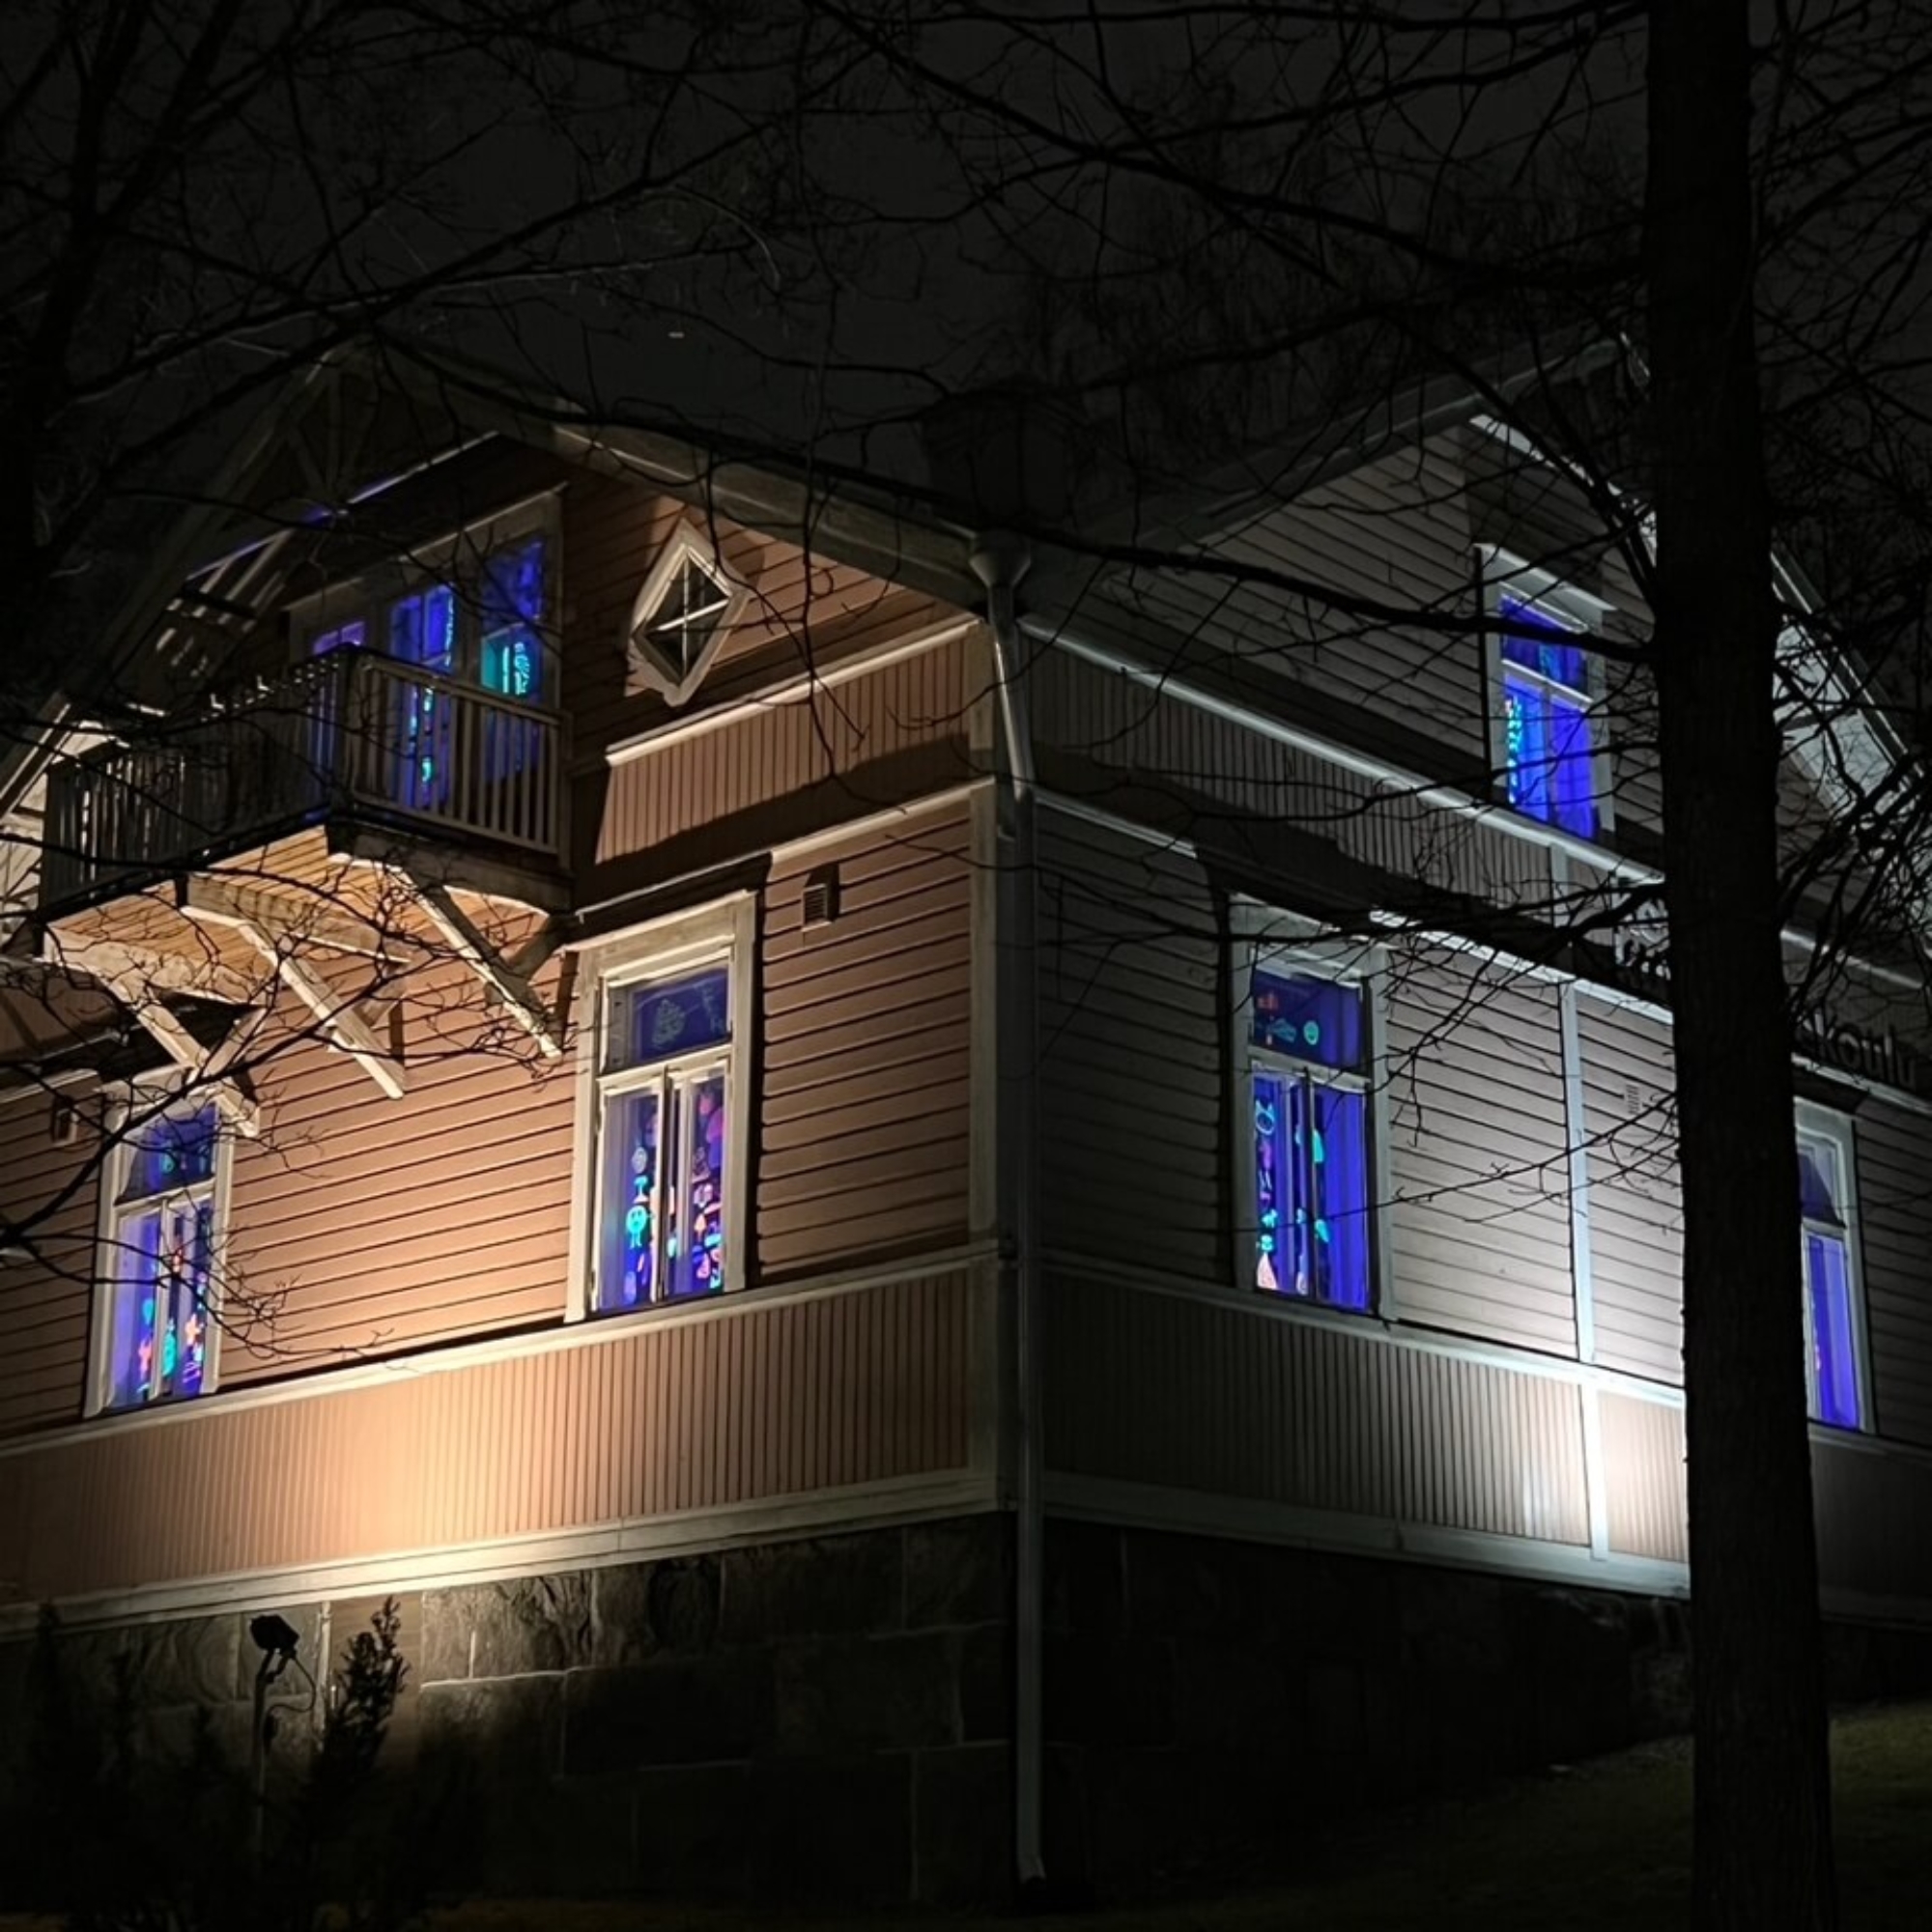 Ruskea puutalo, jonka ikkunoissa loistaa uv-valolla valaistuja värikkäitä piirustuksia.